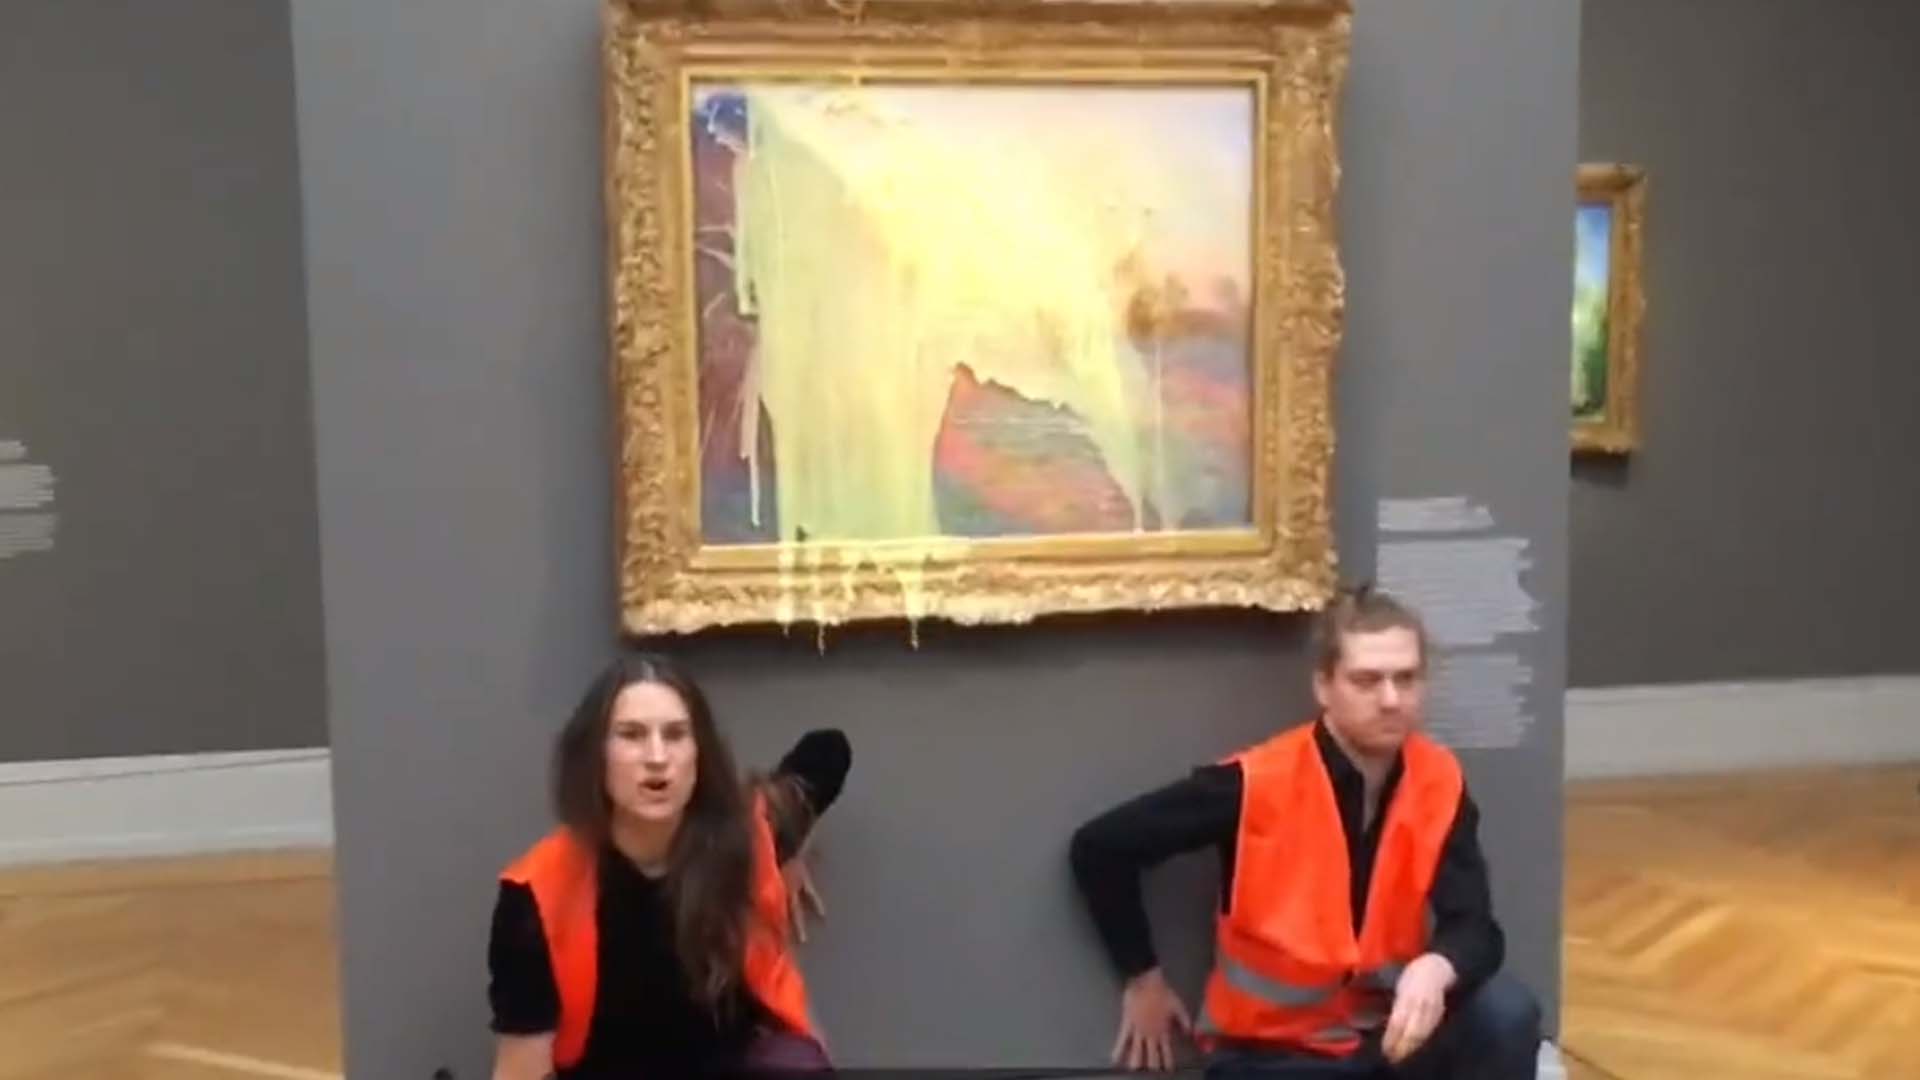 Les militants, tous deux vêtus de gilets orange à haute visibilité, se sont également collés au mur sous le tableau.